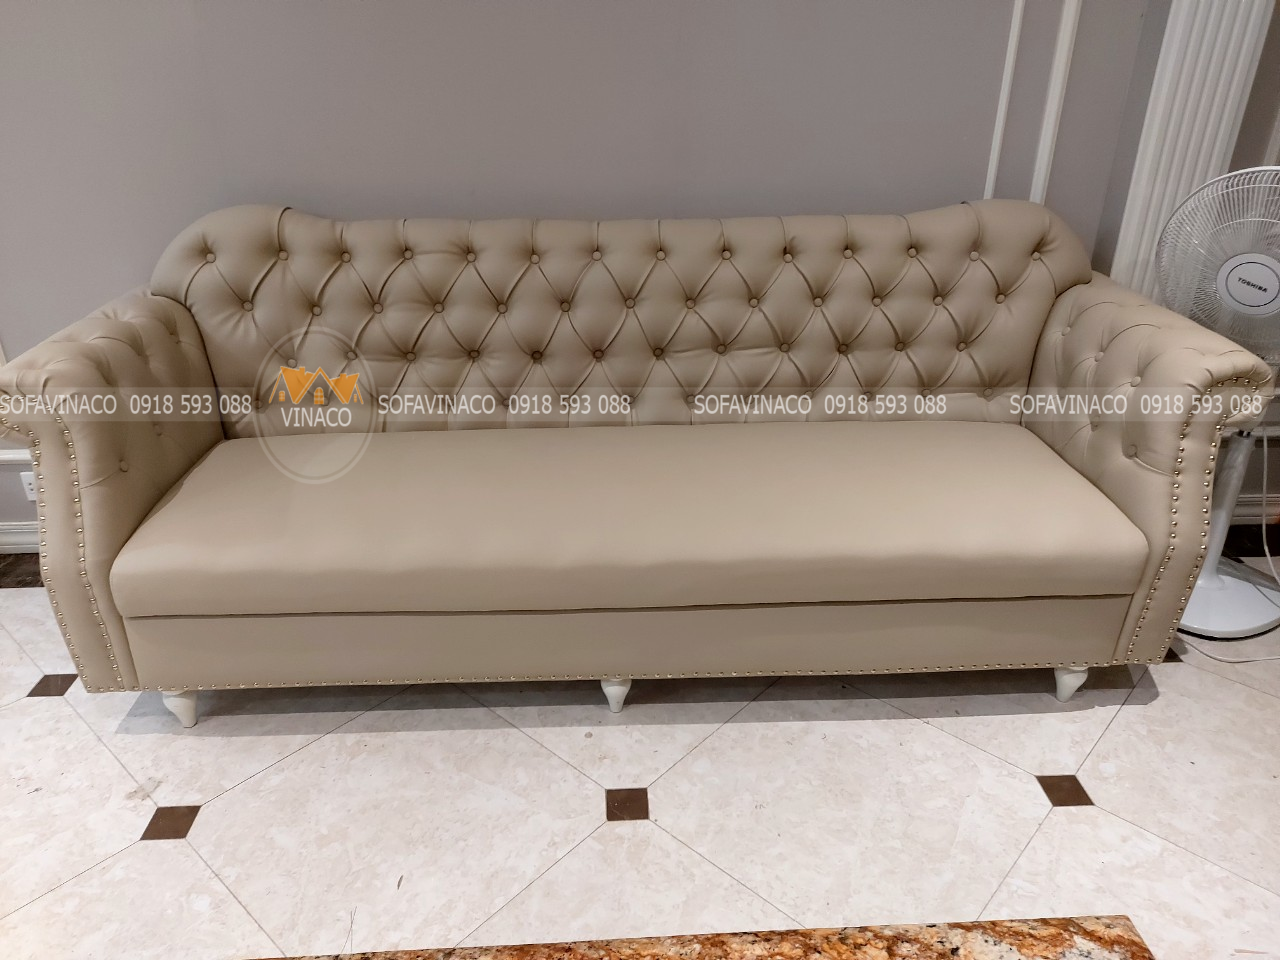 Lựa chọn chất liệu bọc ghế sofa cho phù hợp với phong cách nội thất hướng đến